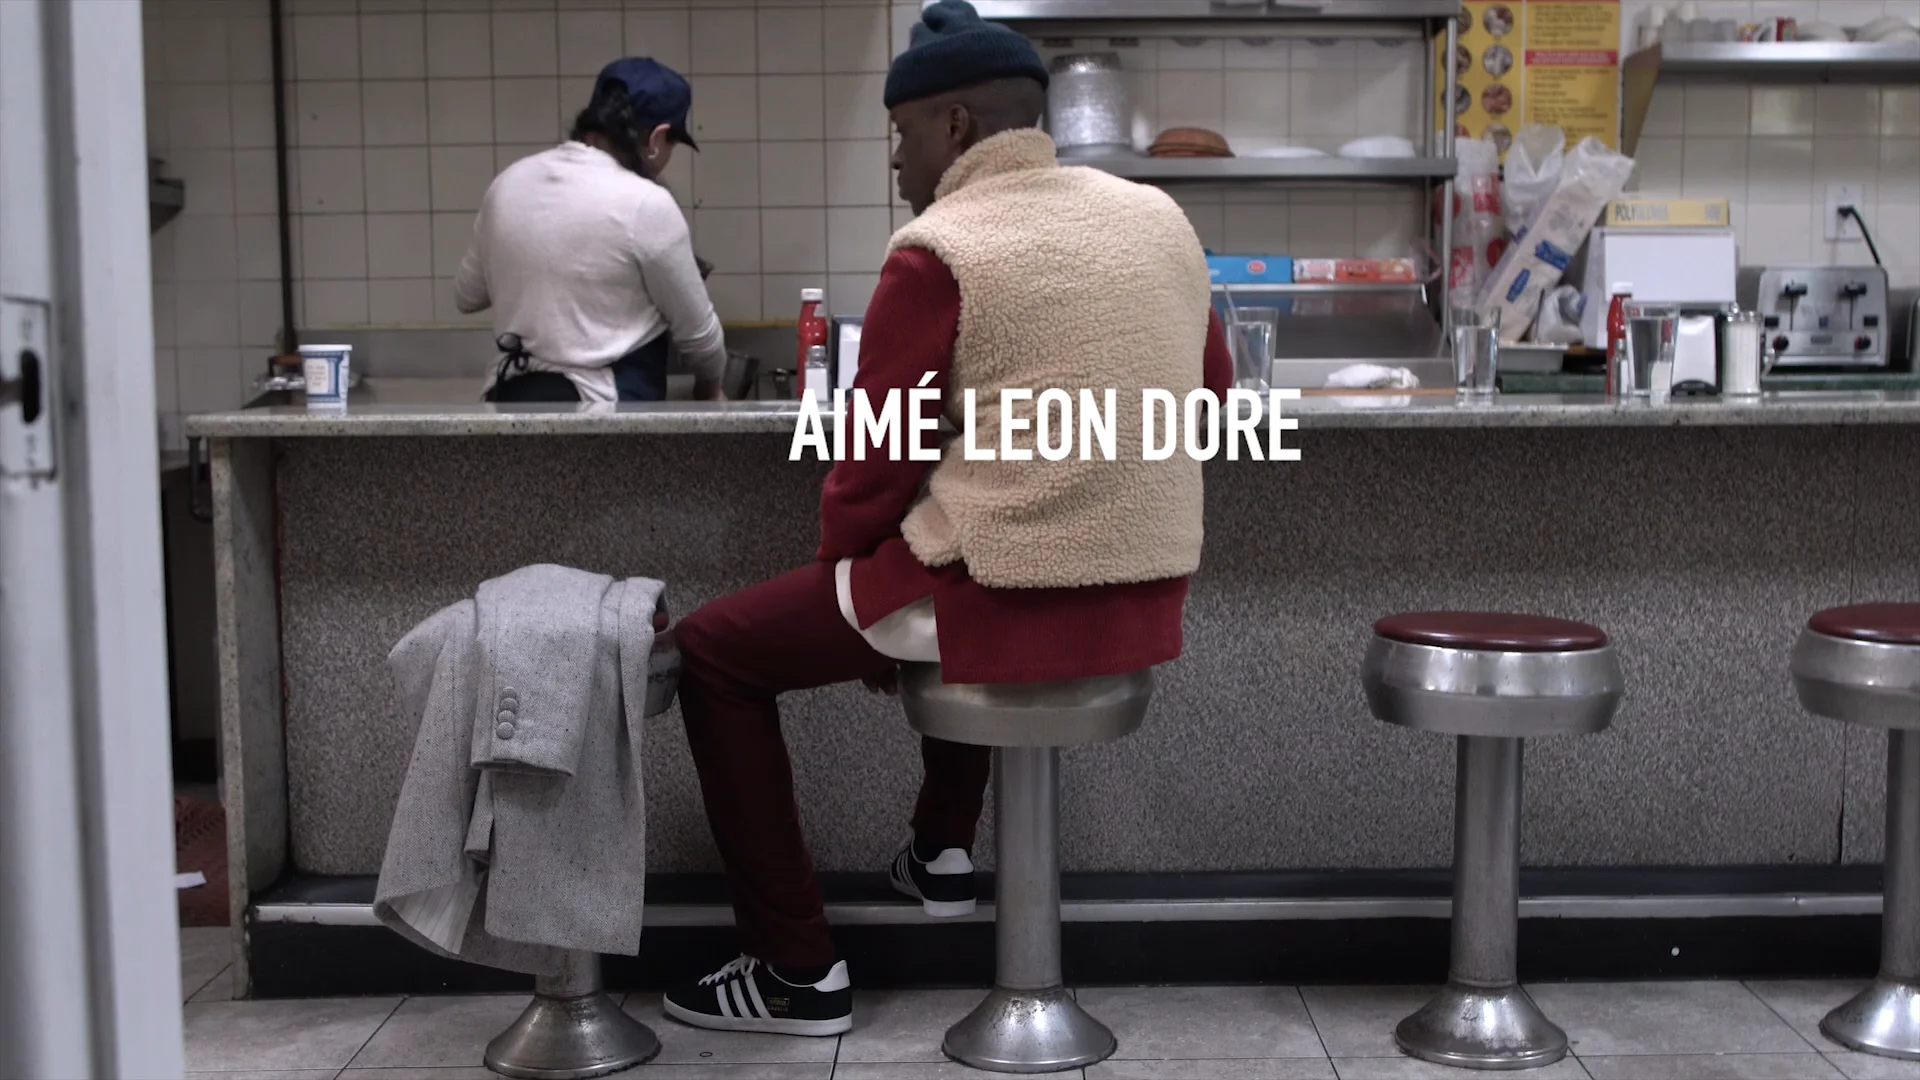 Aimé Leon Dore London Flagship on Vimeo